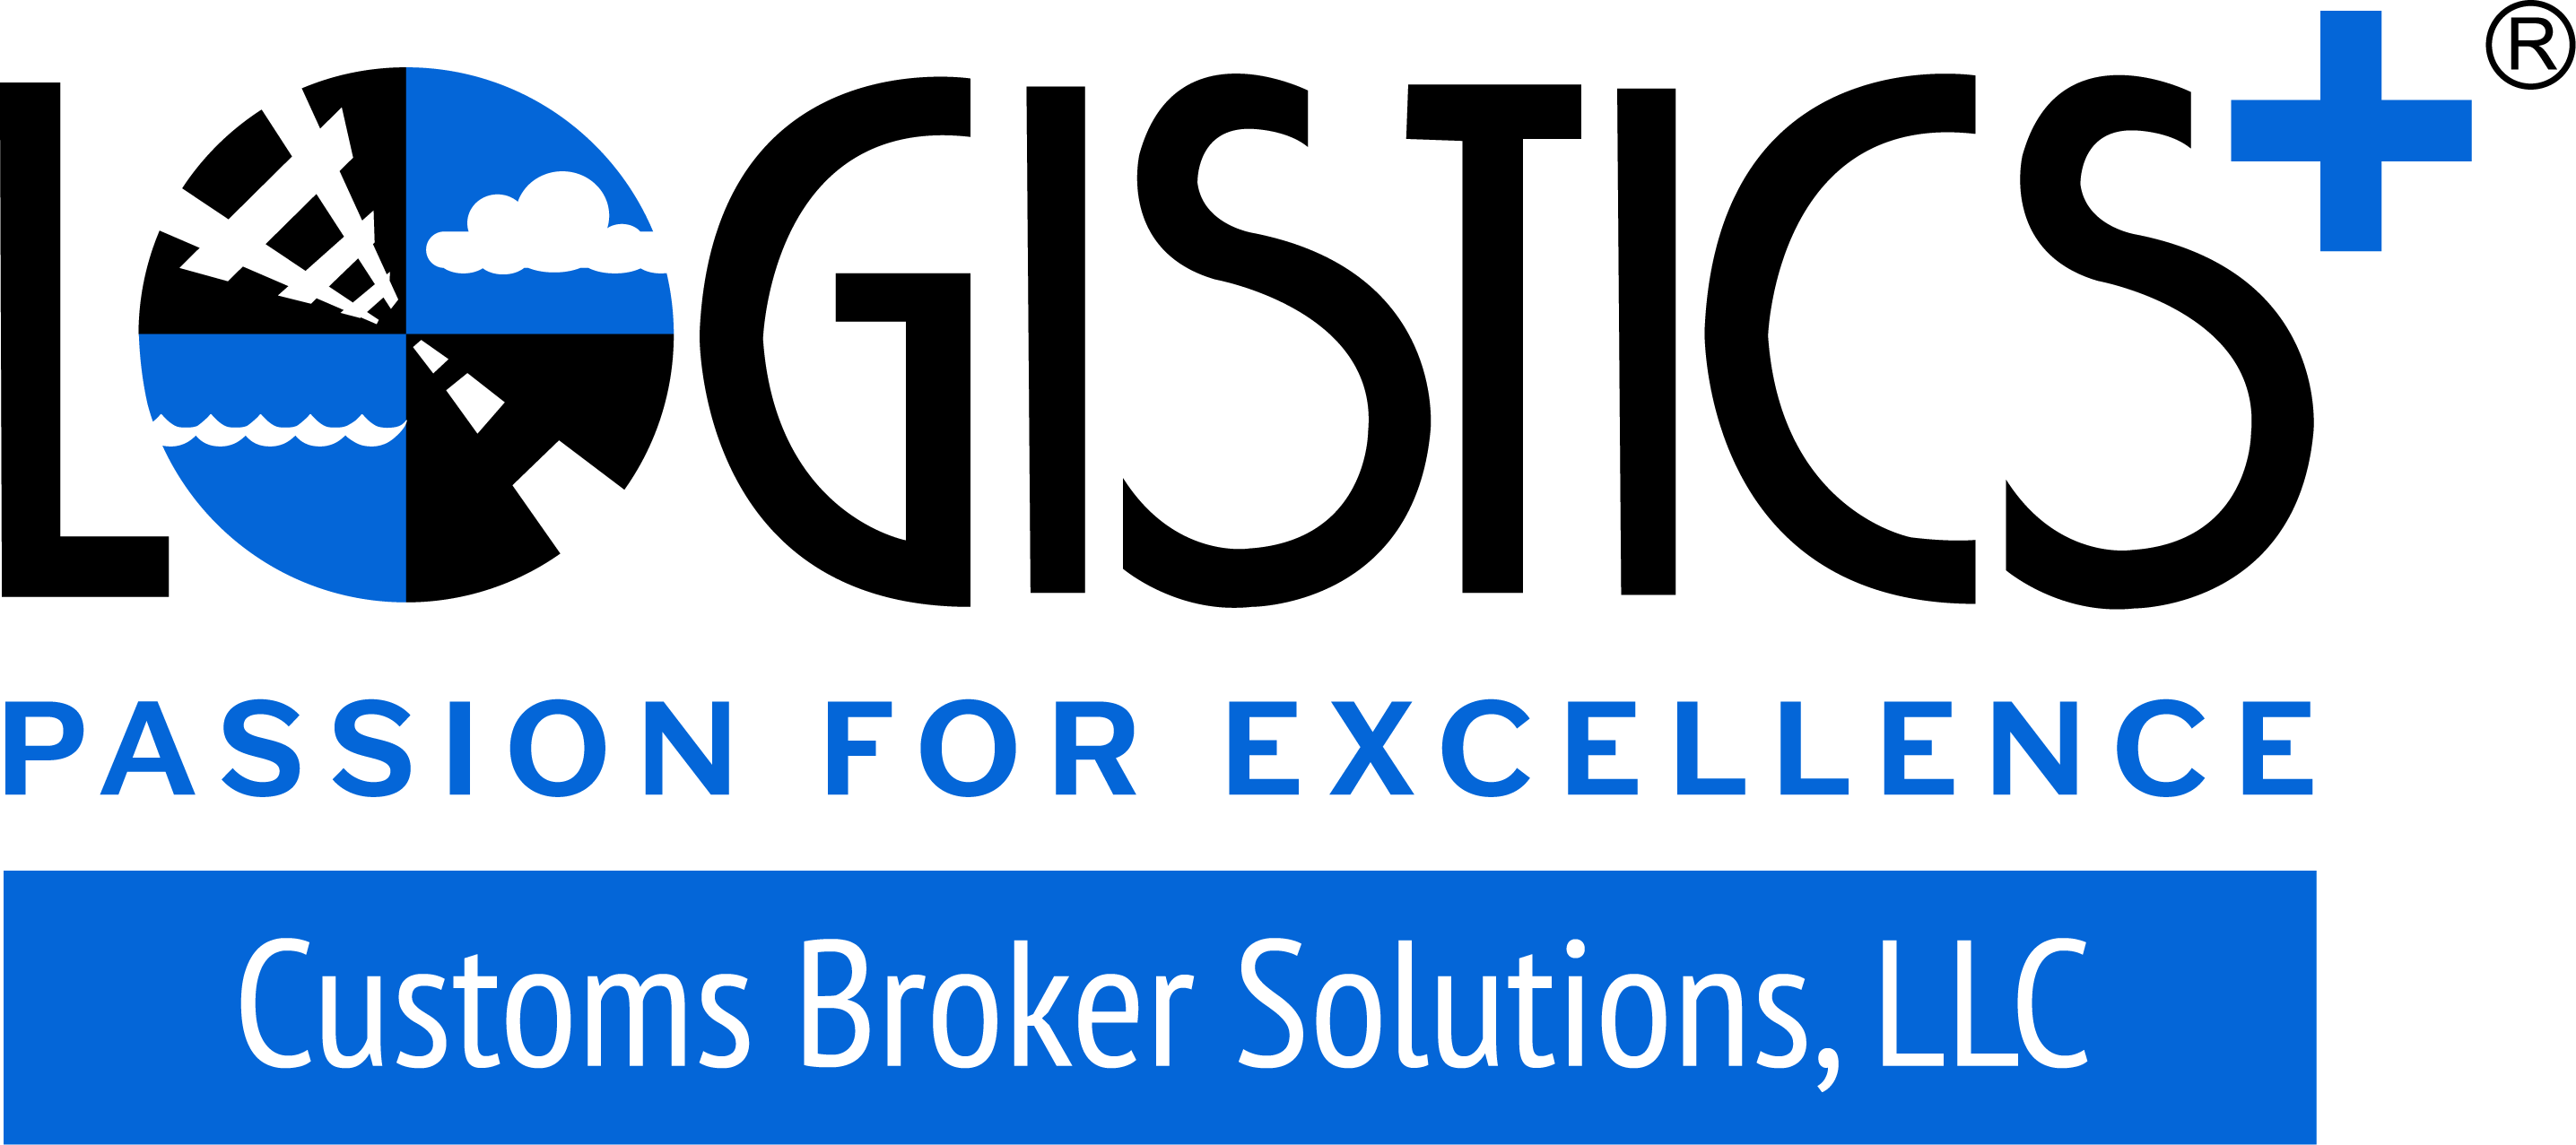 Lp Customs Broker Solutions Llc - Logistics Plus (2872x1277)